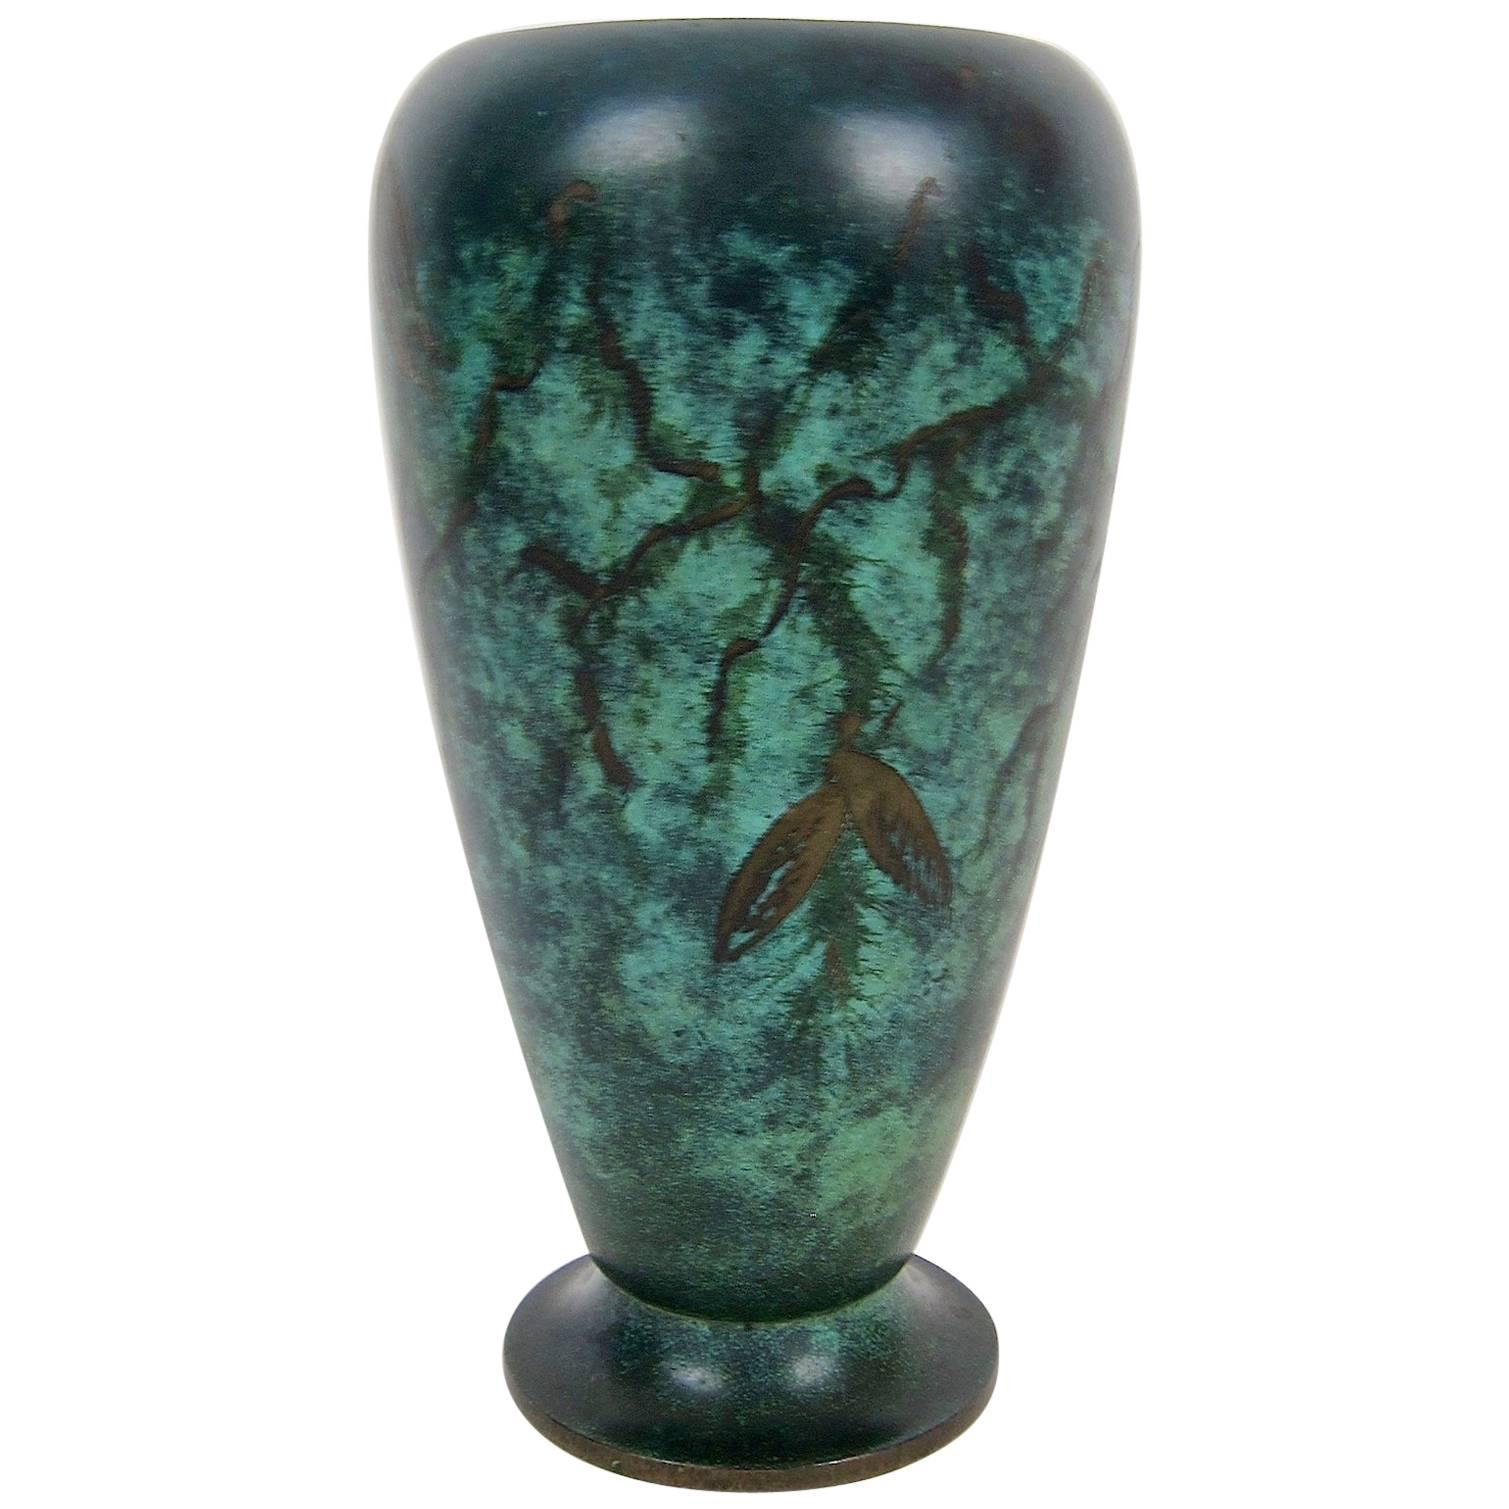 Art Deco WMF Ikora Verdigris Metal Vase with Engraved Leaves